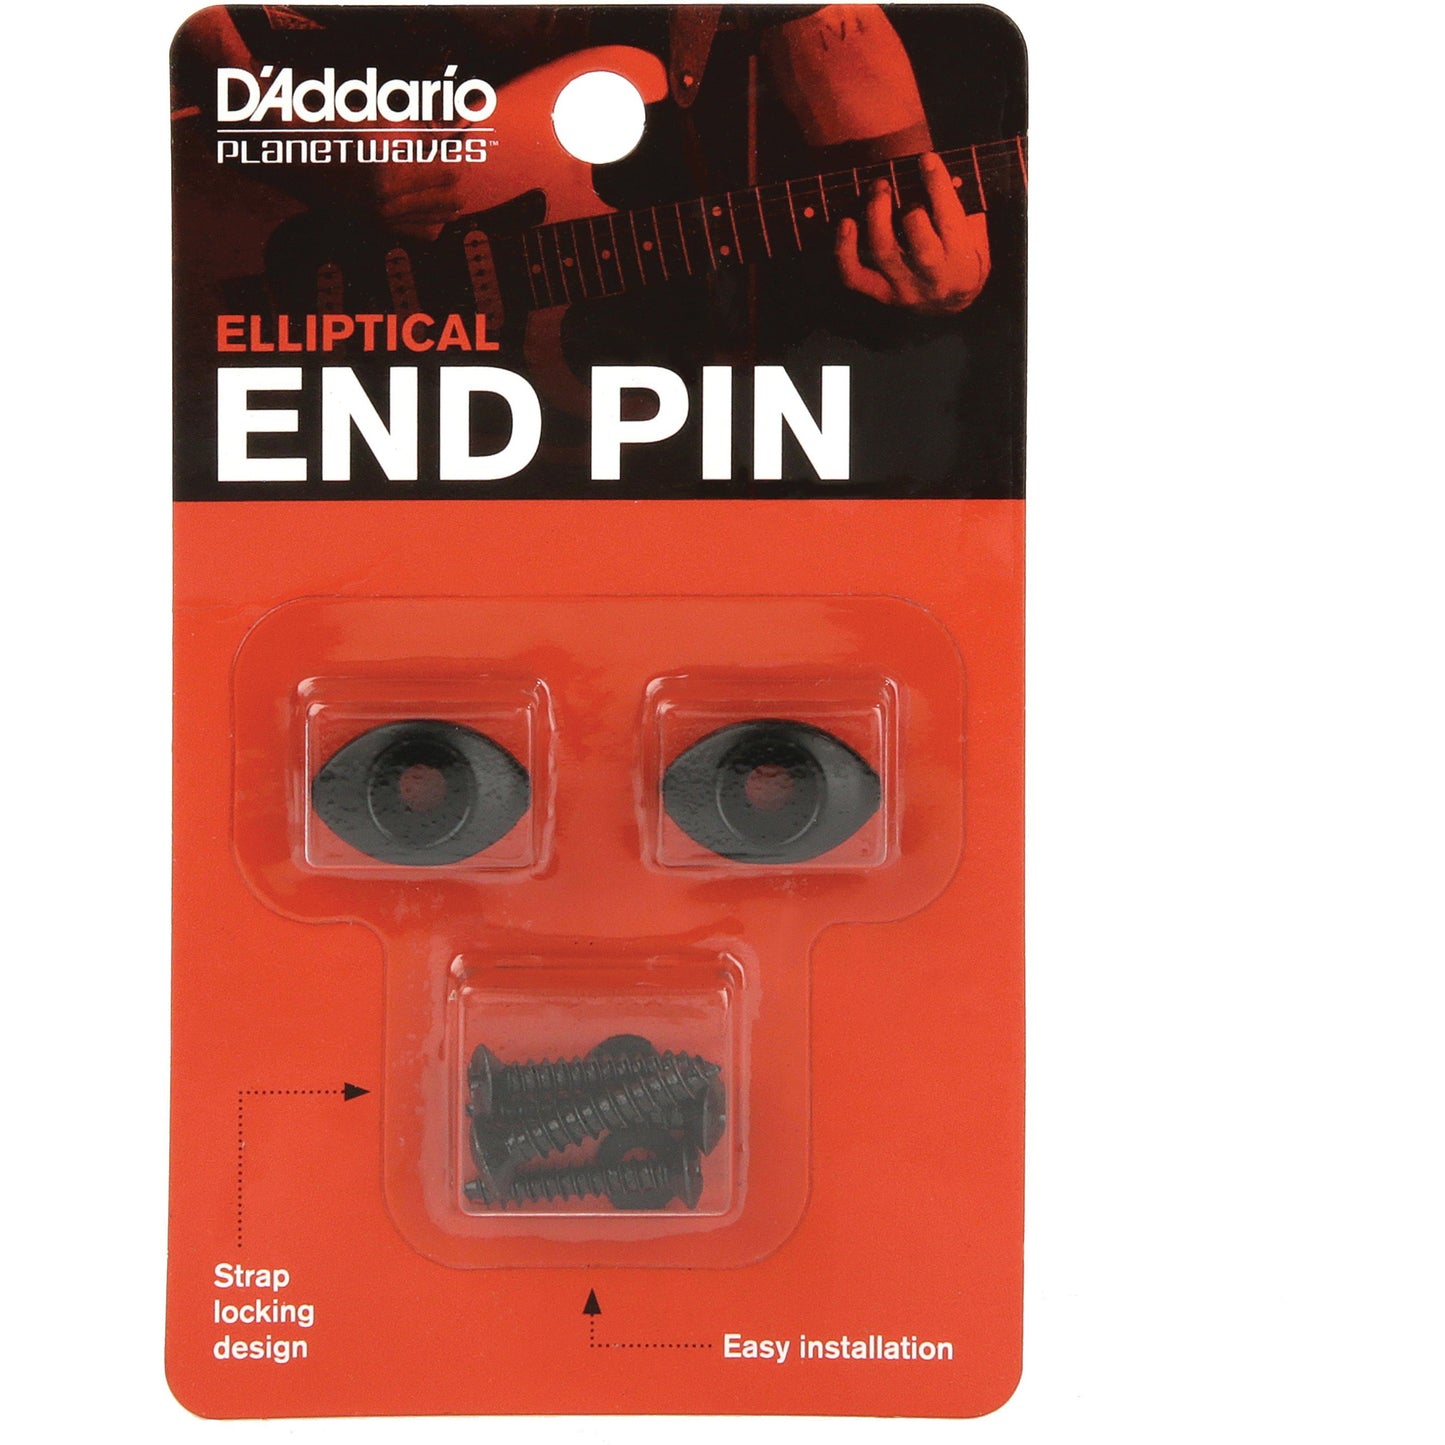 D'Addario Elliptical End Pins, Black